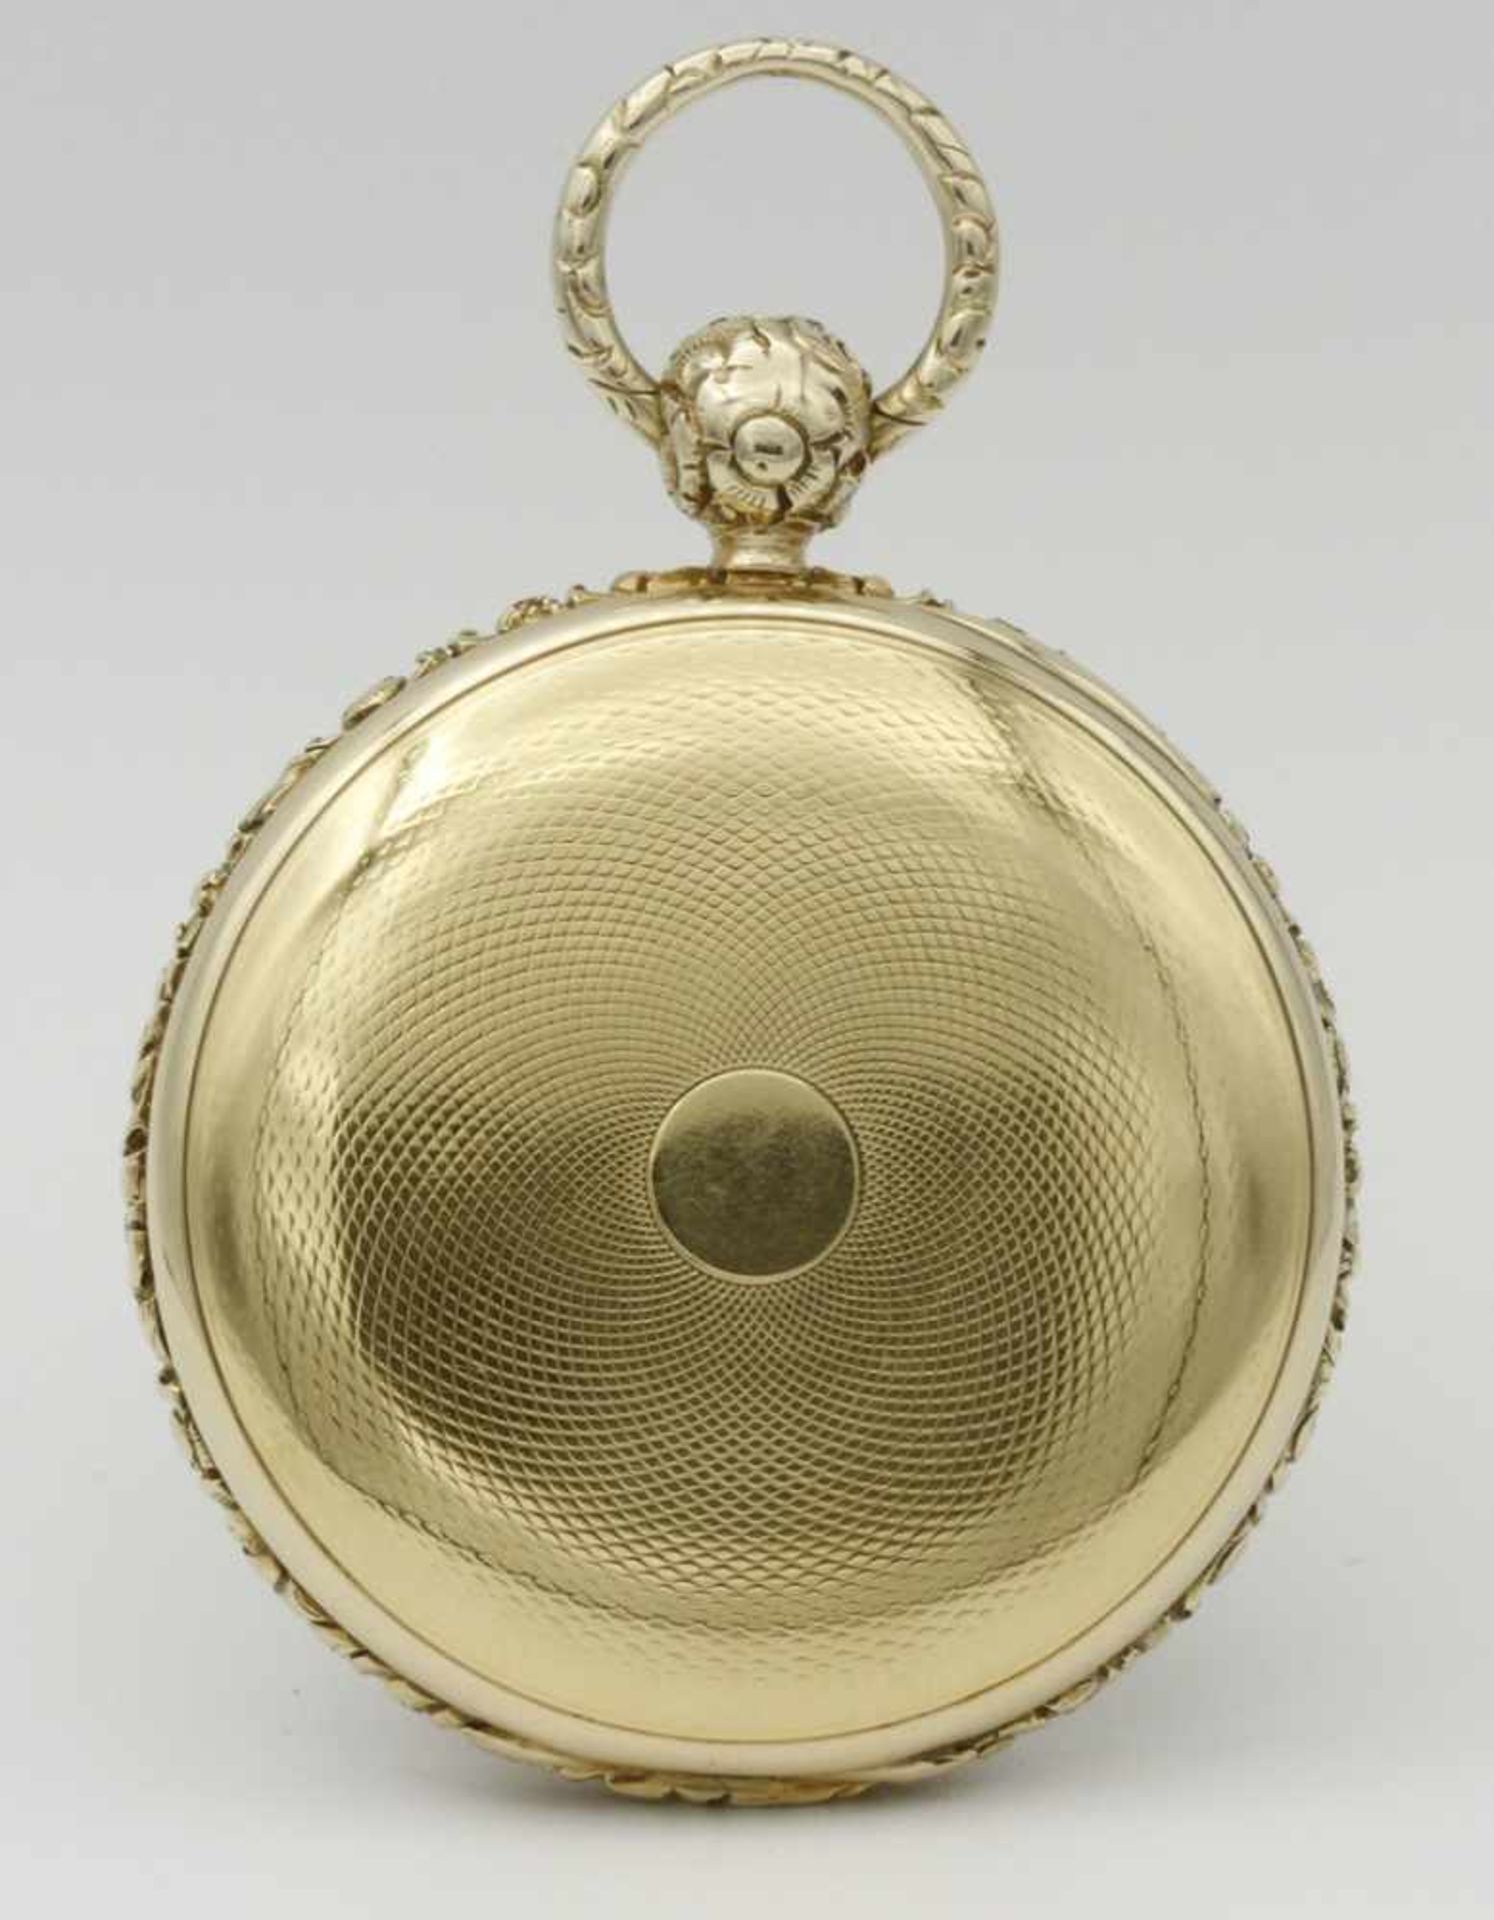 Detached Lever reich verziere goldene Herrentaschenuhr, um 1830 - Bild 3 aus 6